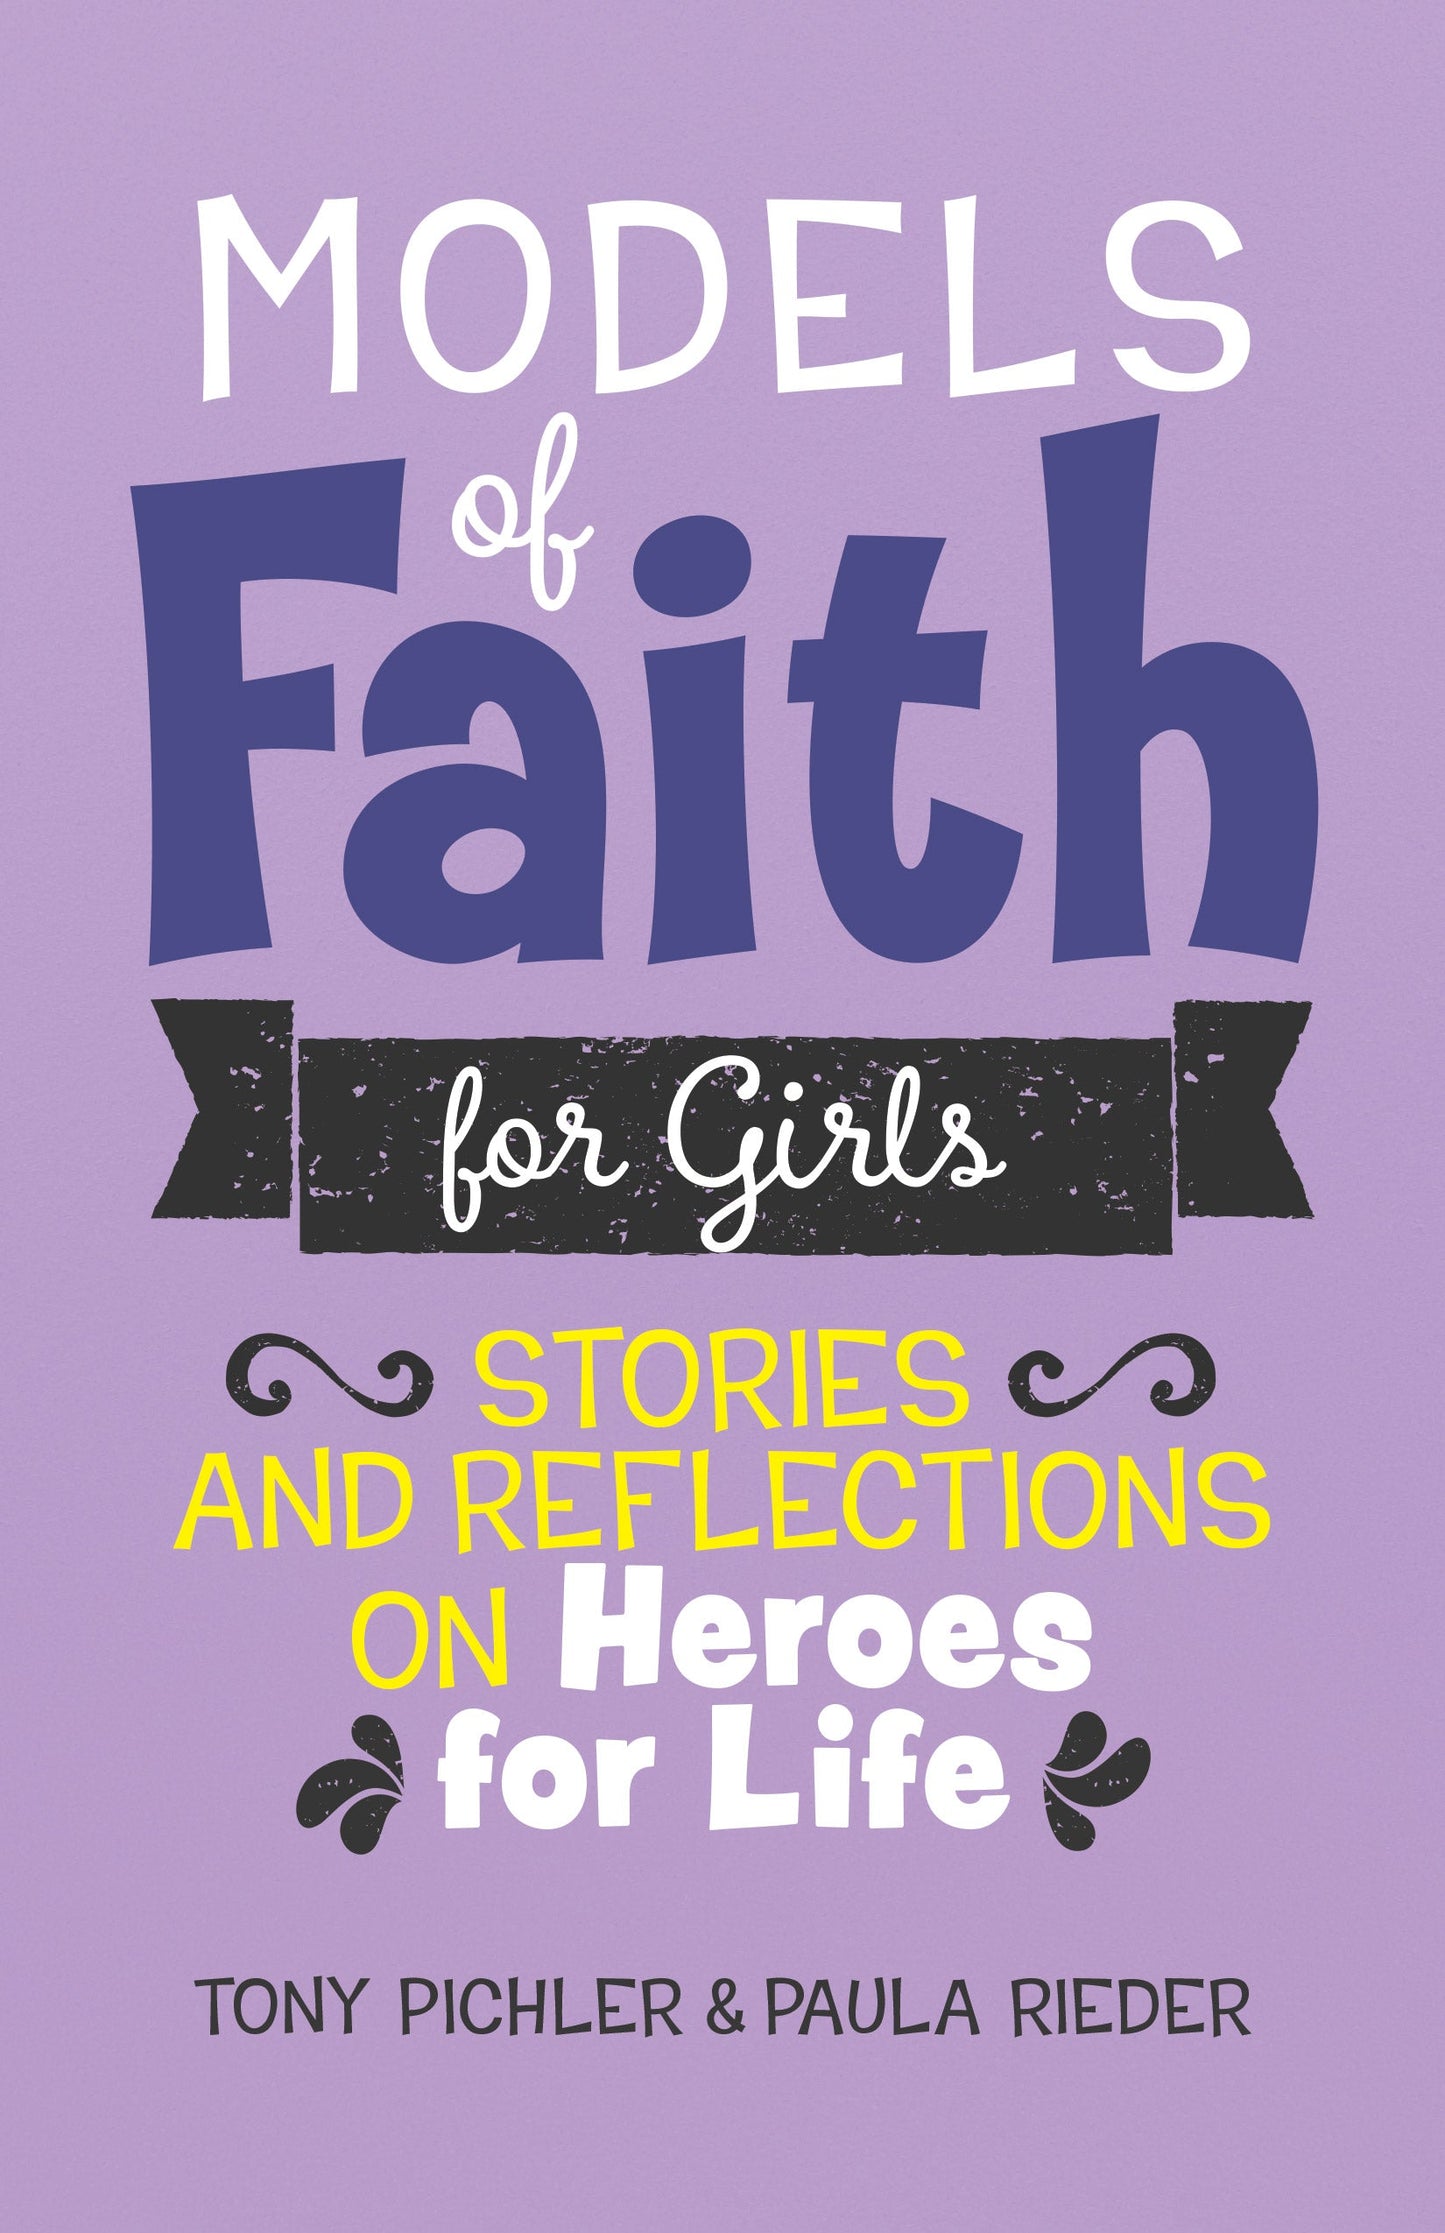 SALE - Models of Faith for Girls